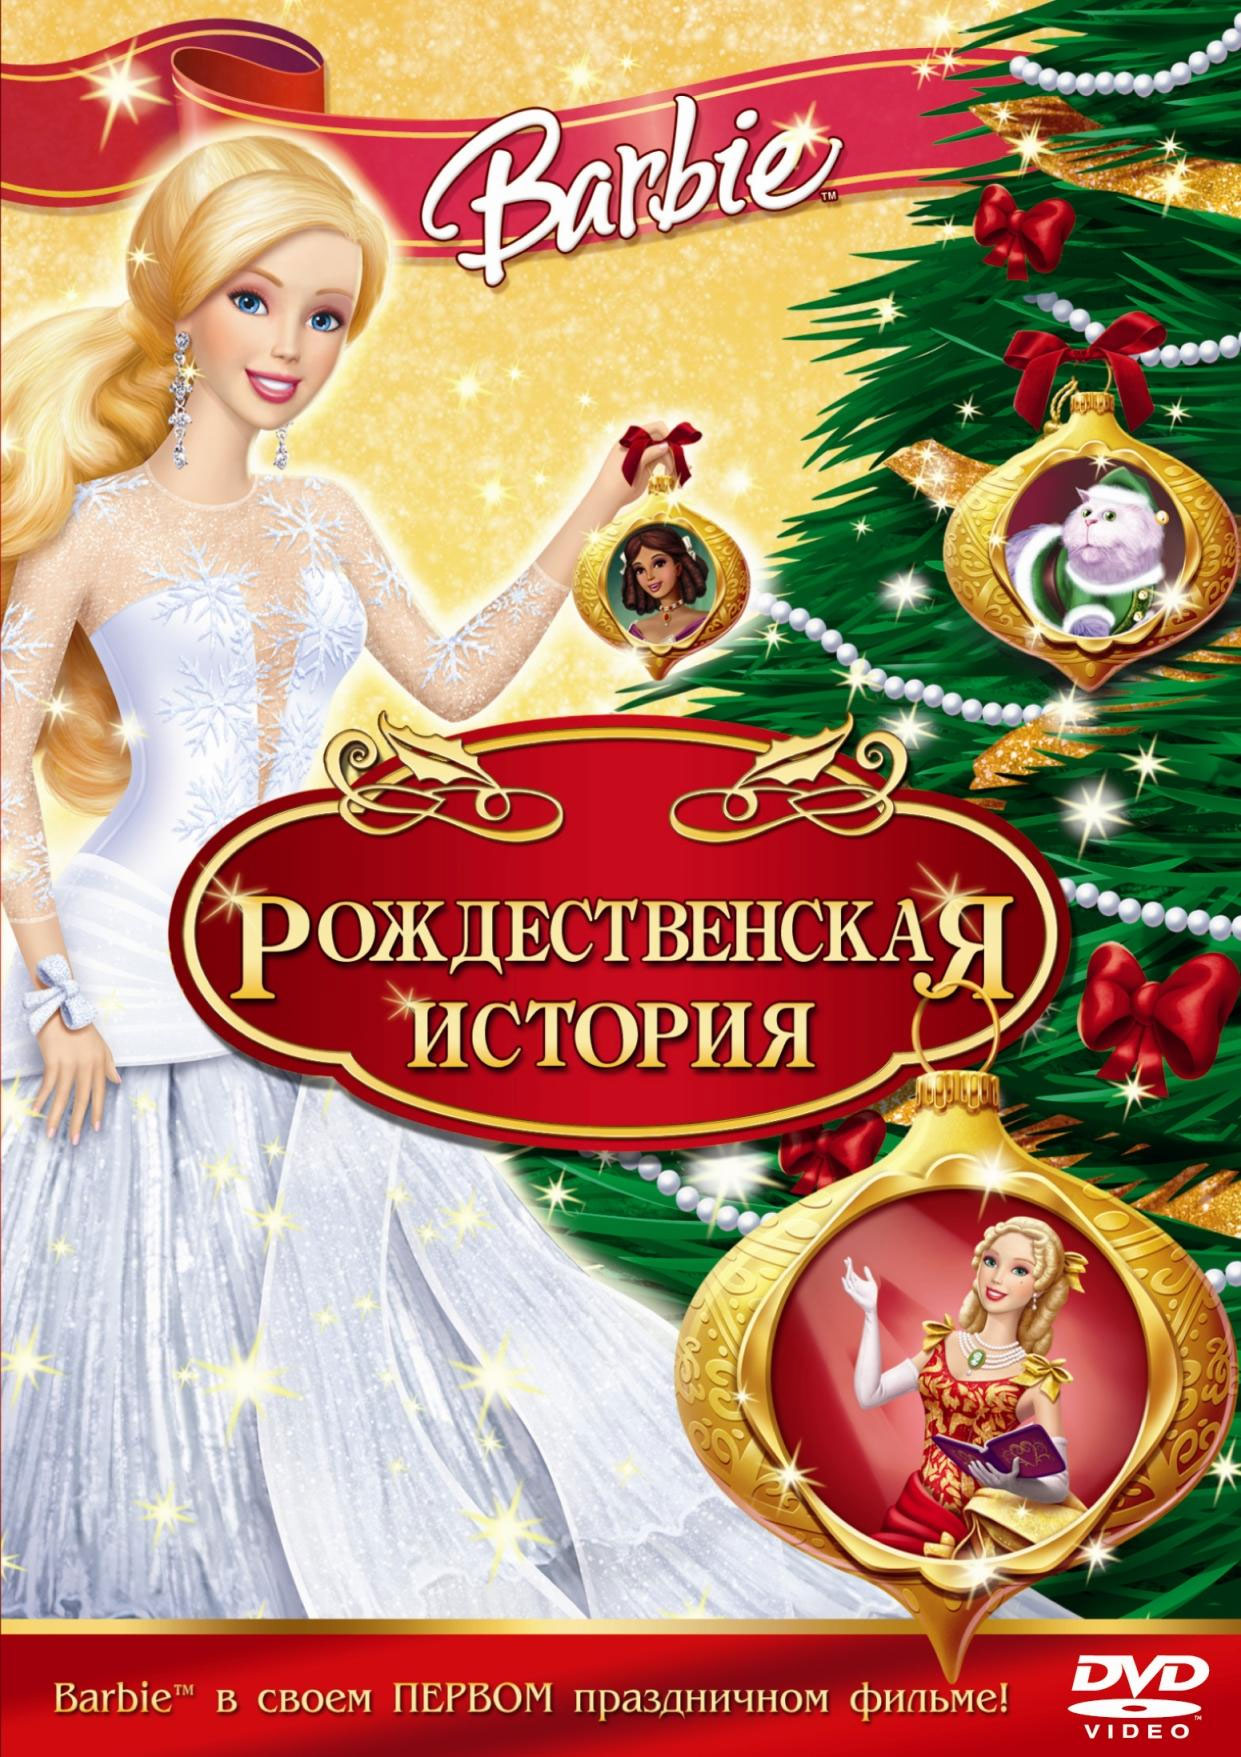 Барби рождественская история (DVD) цена и фото